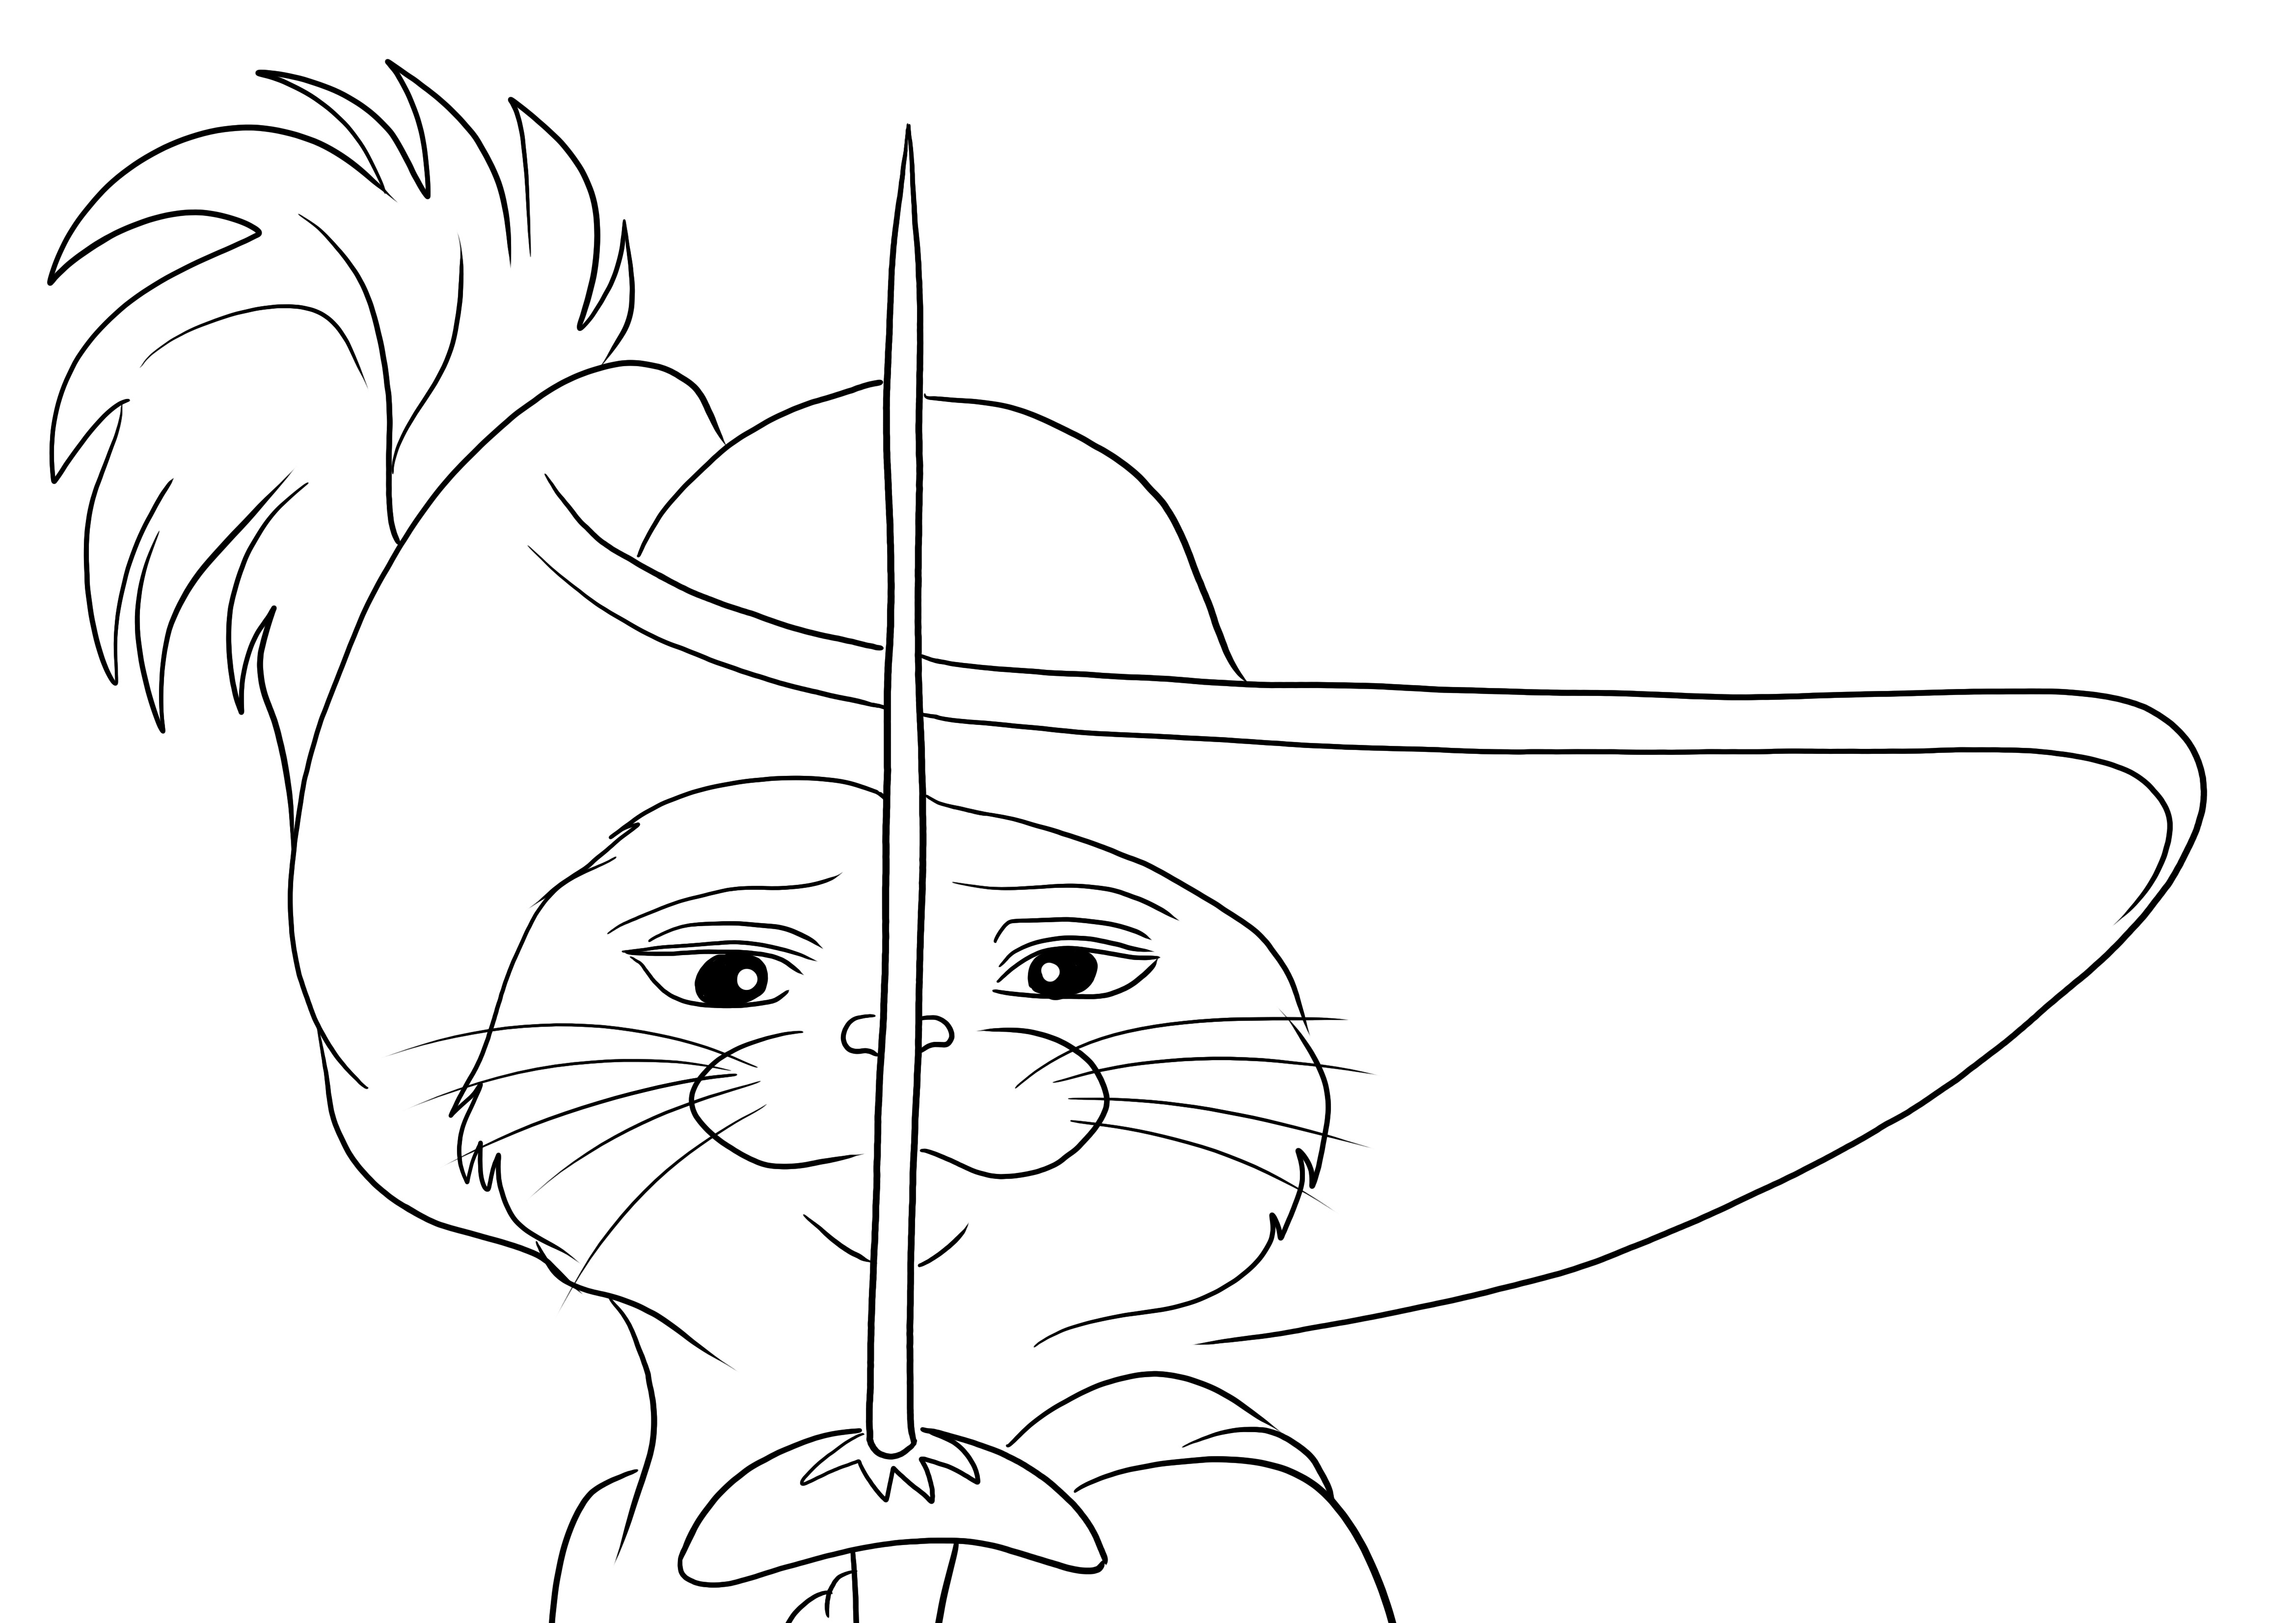 Impressão gratuita da imagem para colorir do Gato de Botas e sua espada para desenho divertido